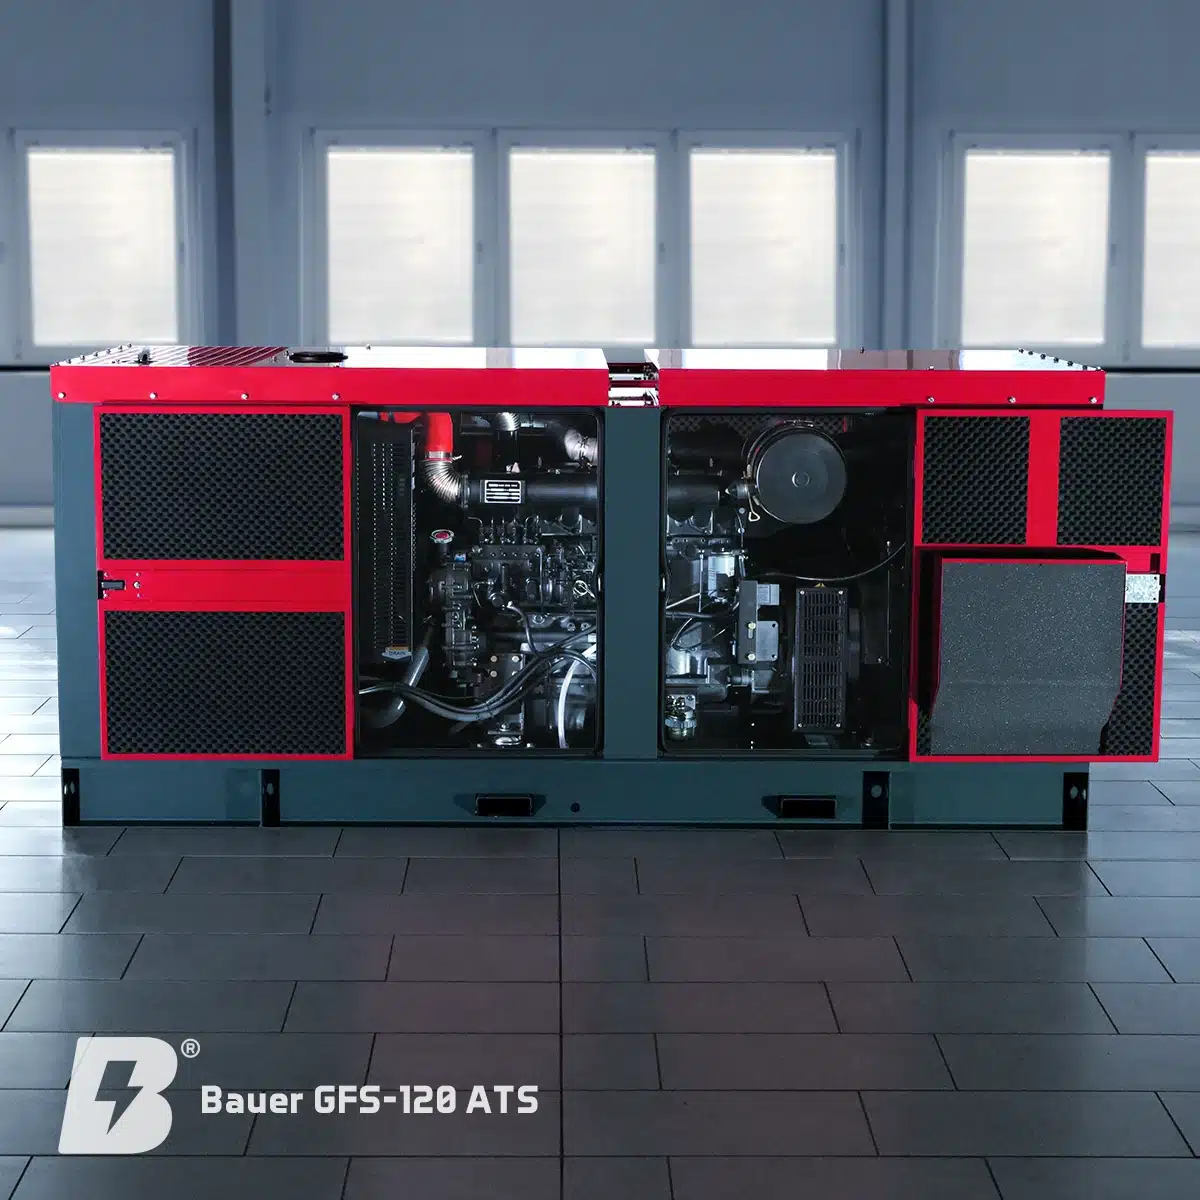 Bauer Generatoren, Bauer GFS-120 ATS, notstromaggregat diesel, generator, stromerzeuger, notstrom-generatoren, blackout, dunkelflaute, Stromausfall